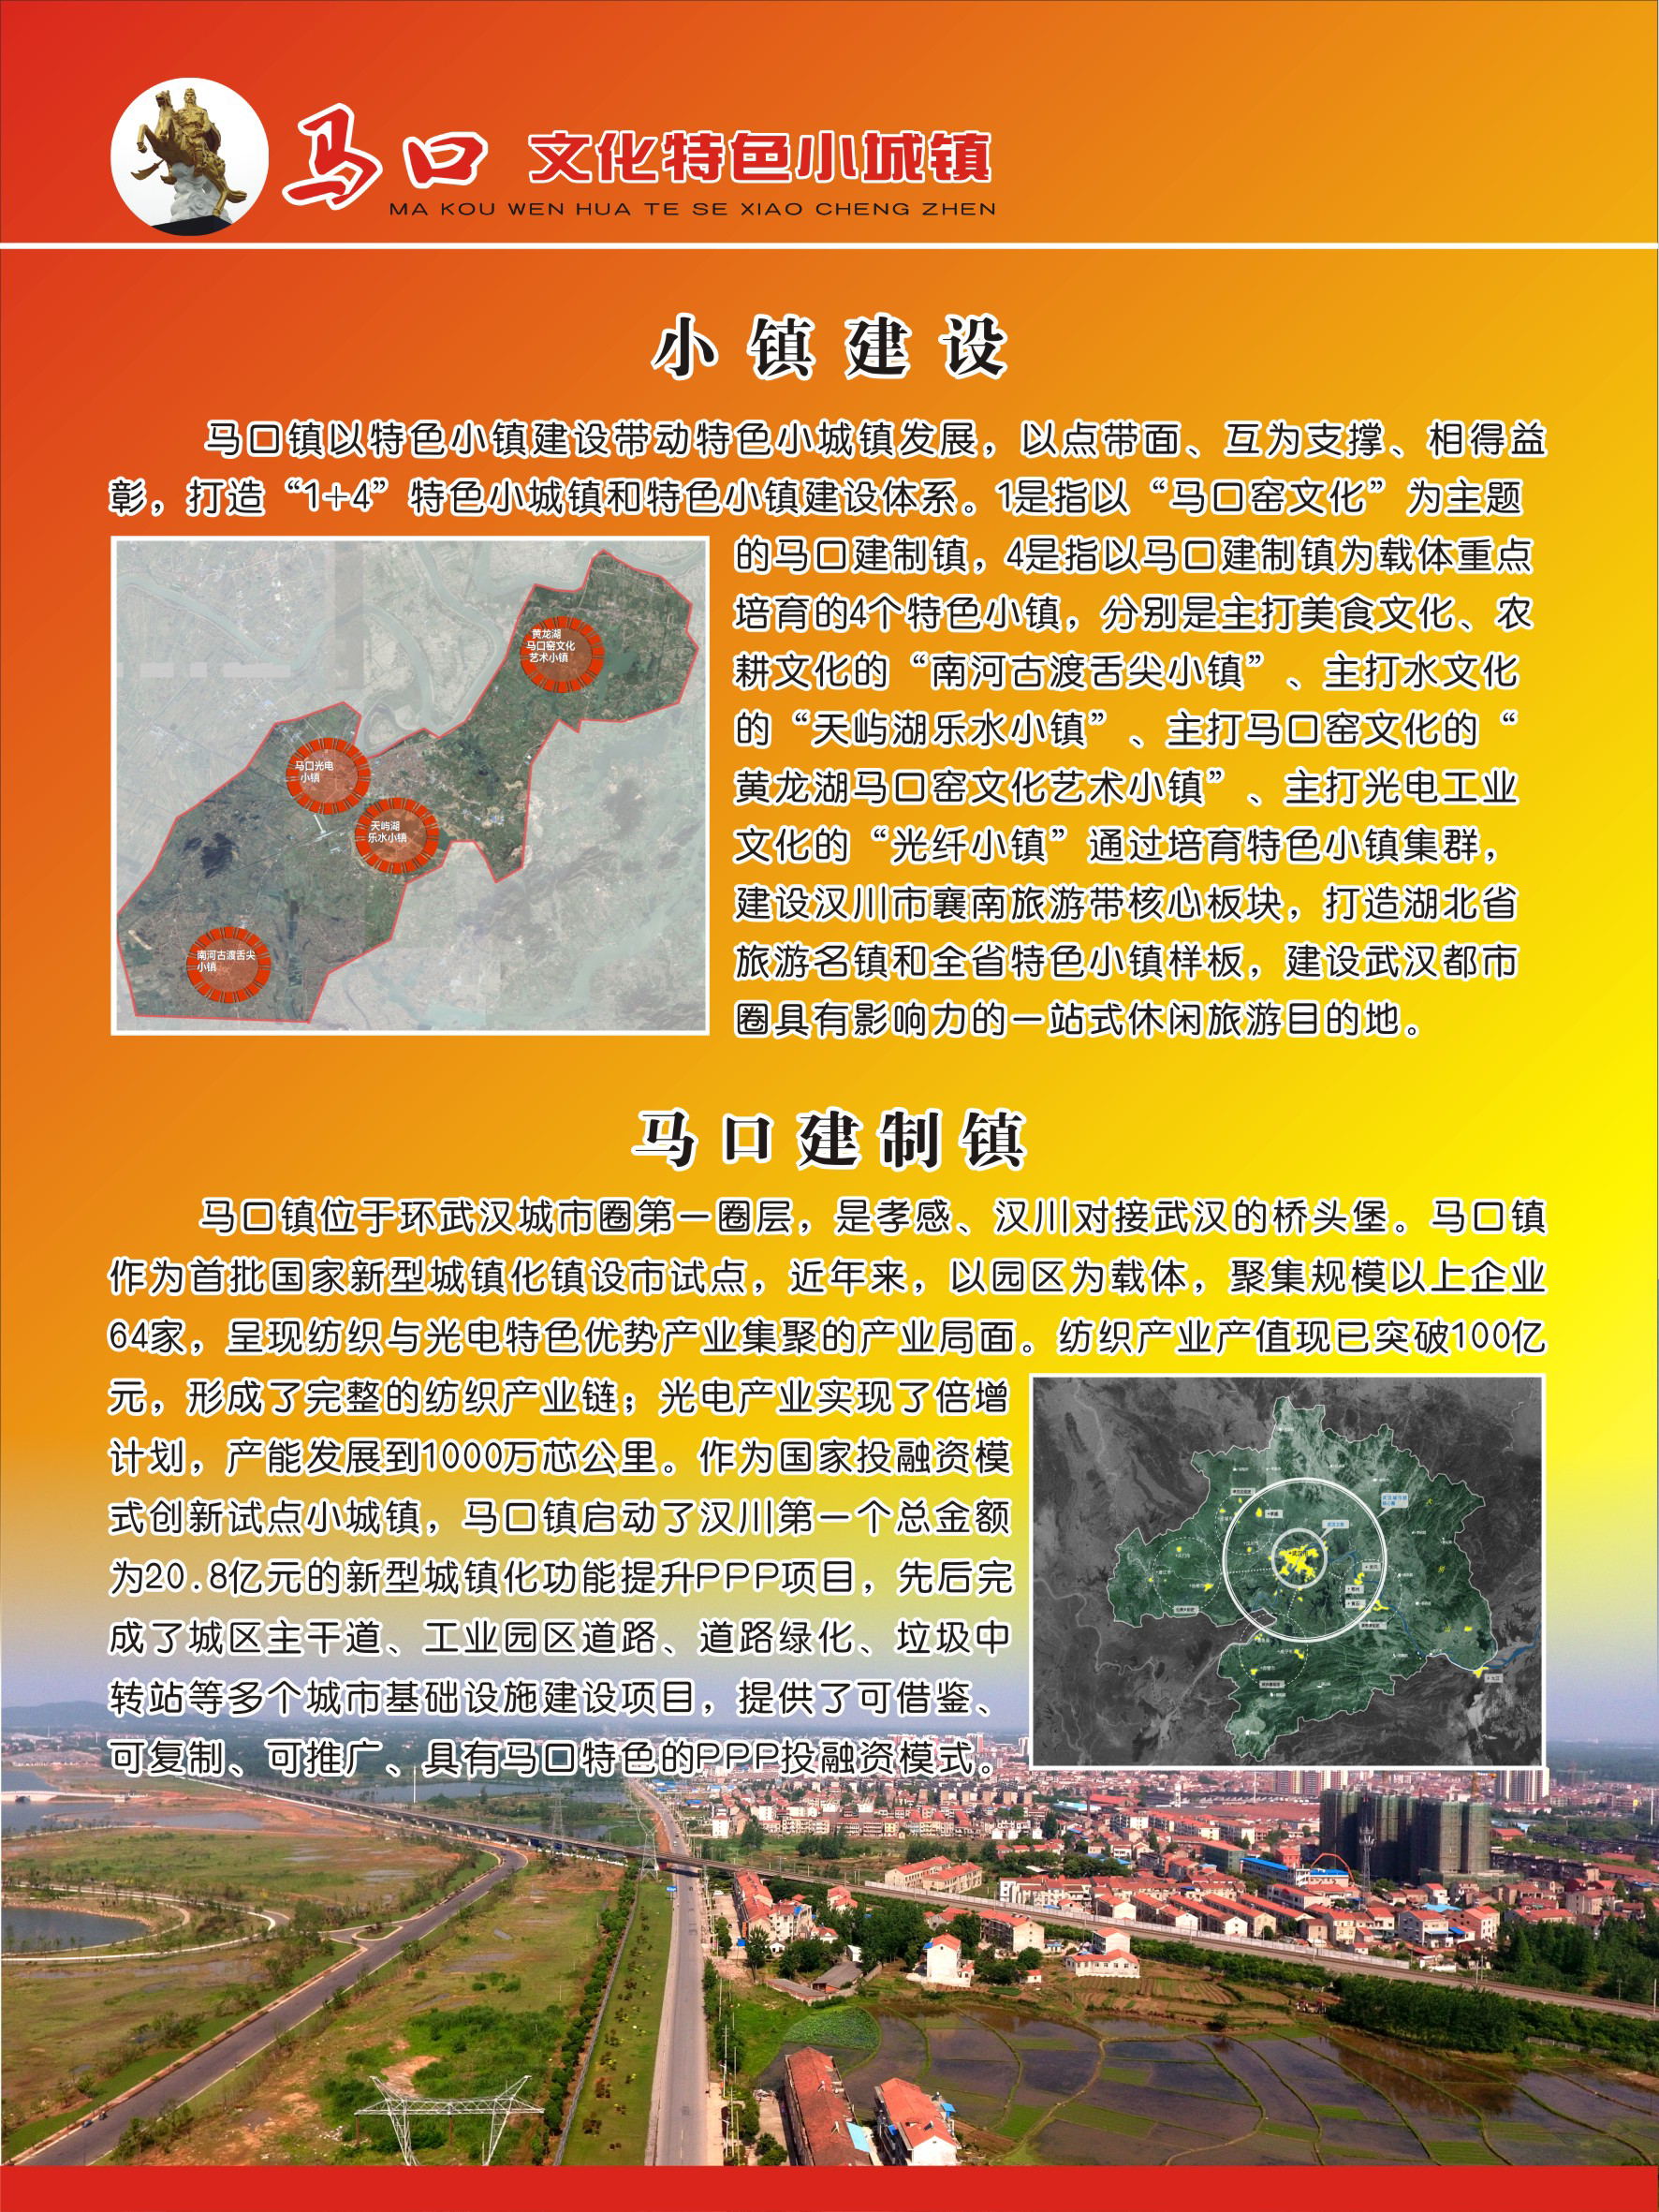 汉川市马口镇地图图片